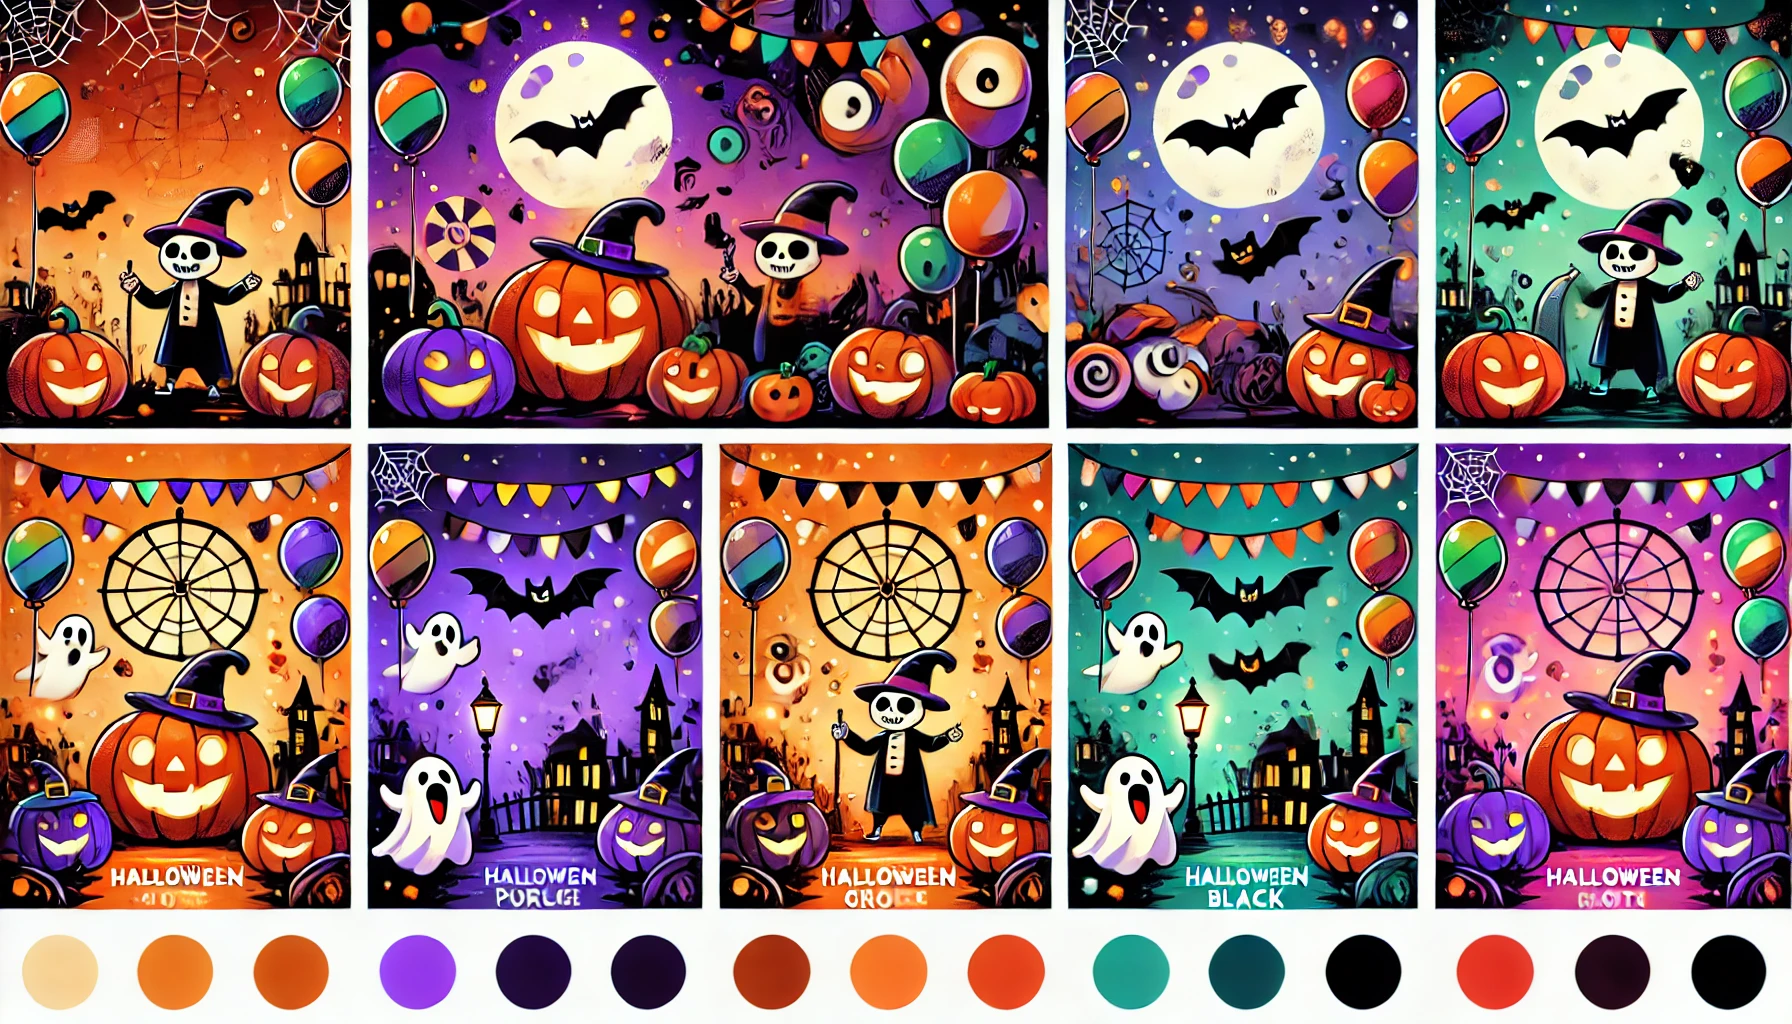 6 Unique Color Decisions For A Halloween Party